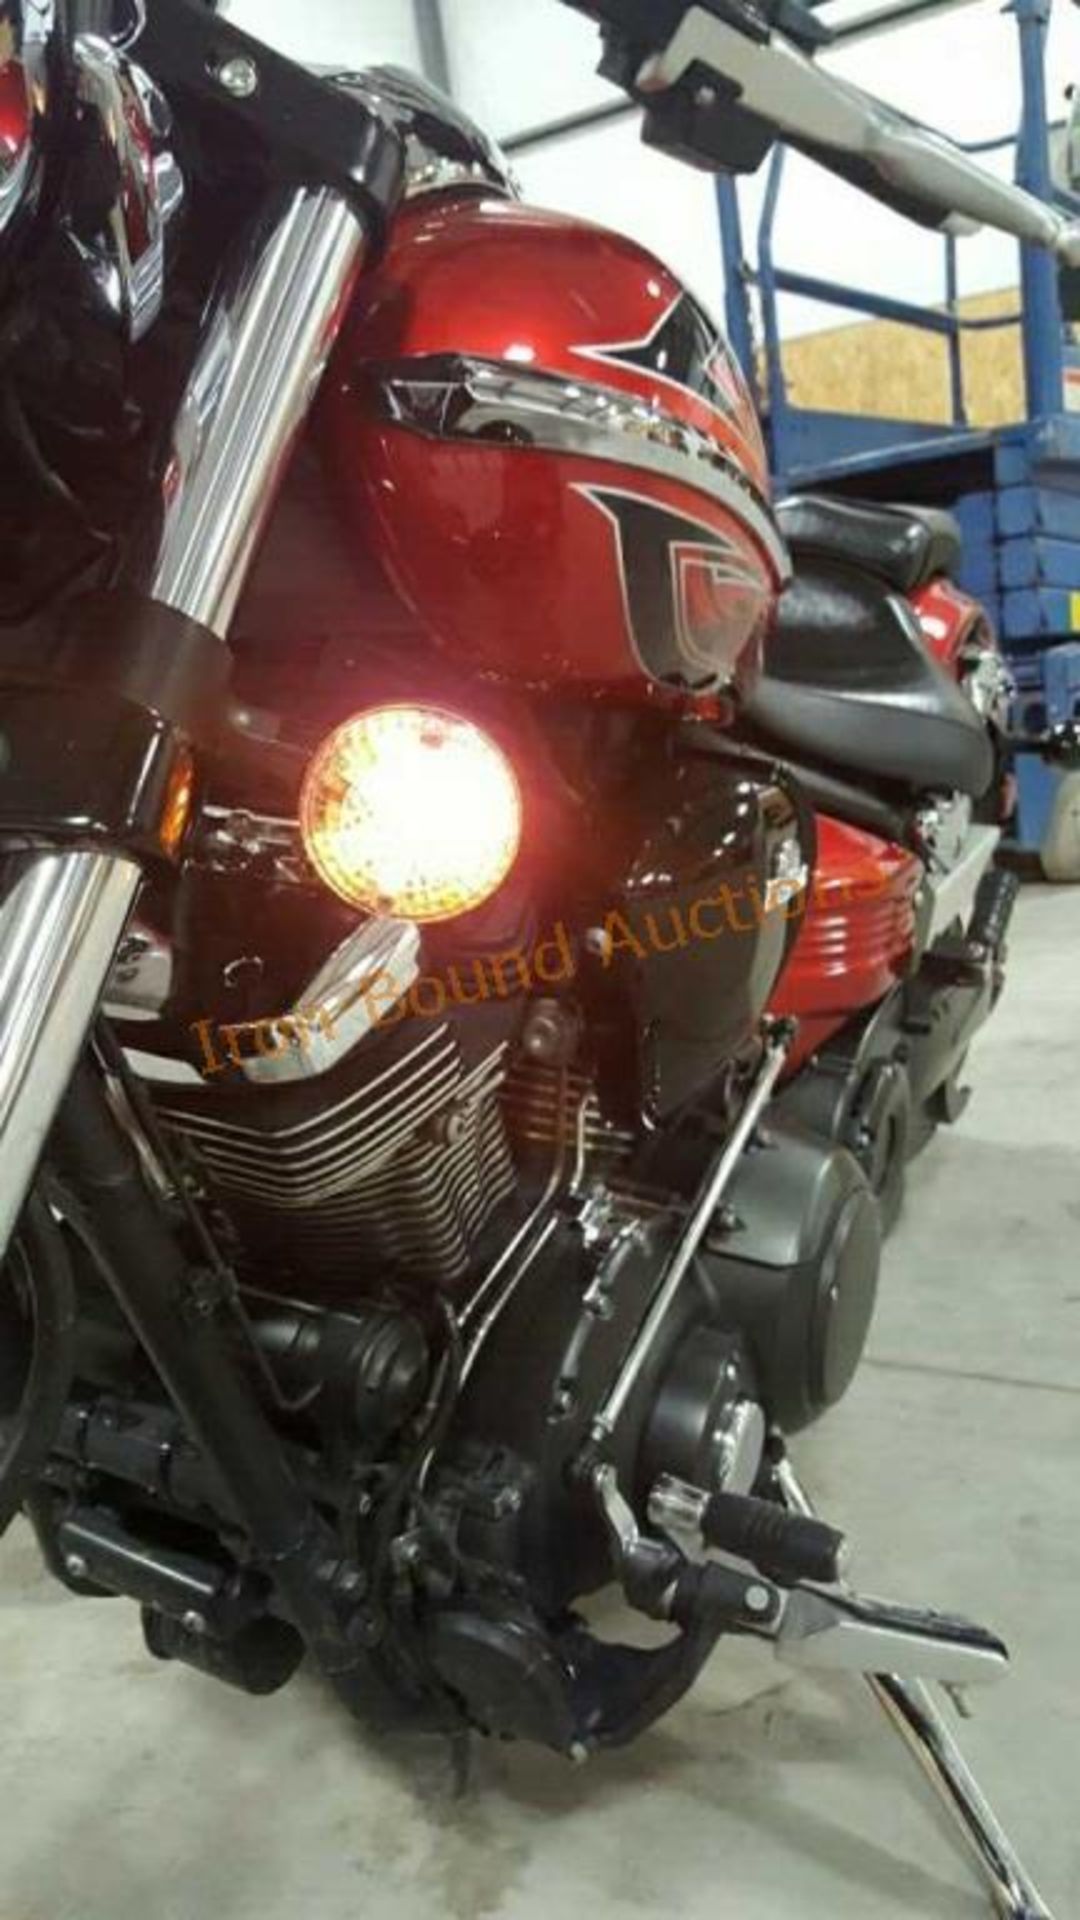 2010 Yamaha Raider 1900 Motorcycle - Image 14 of 23